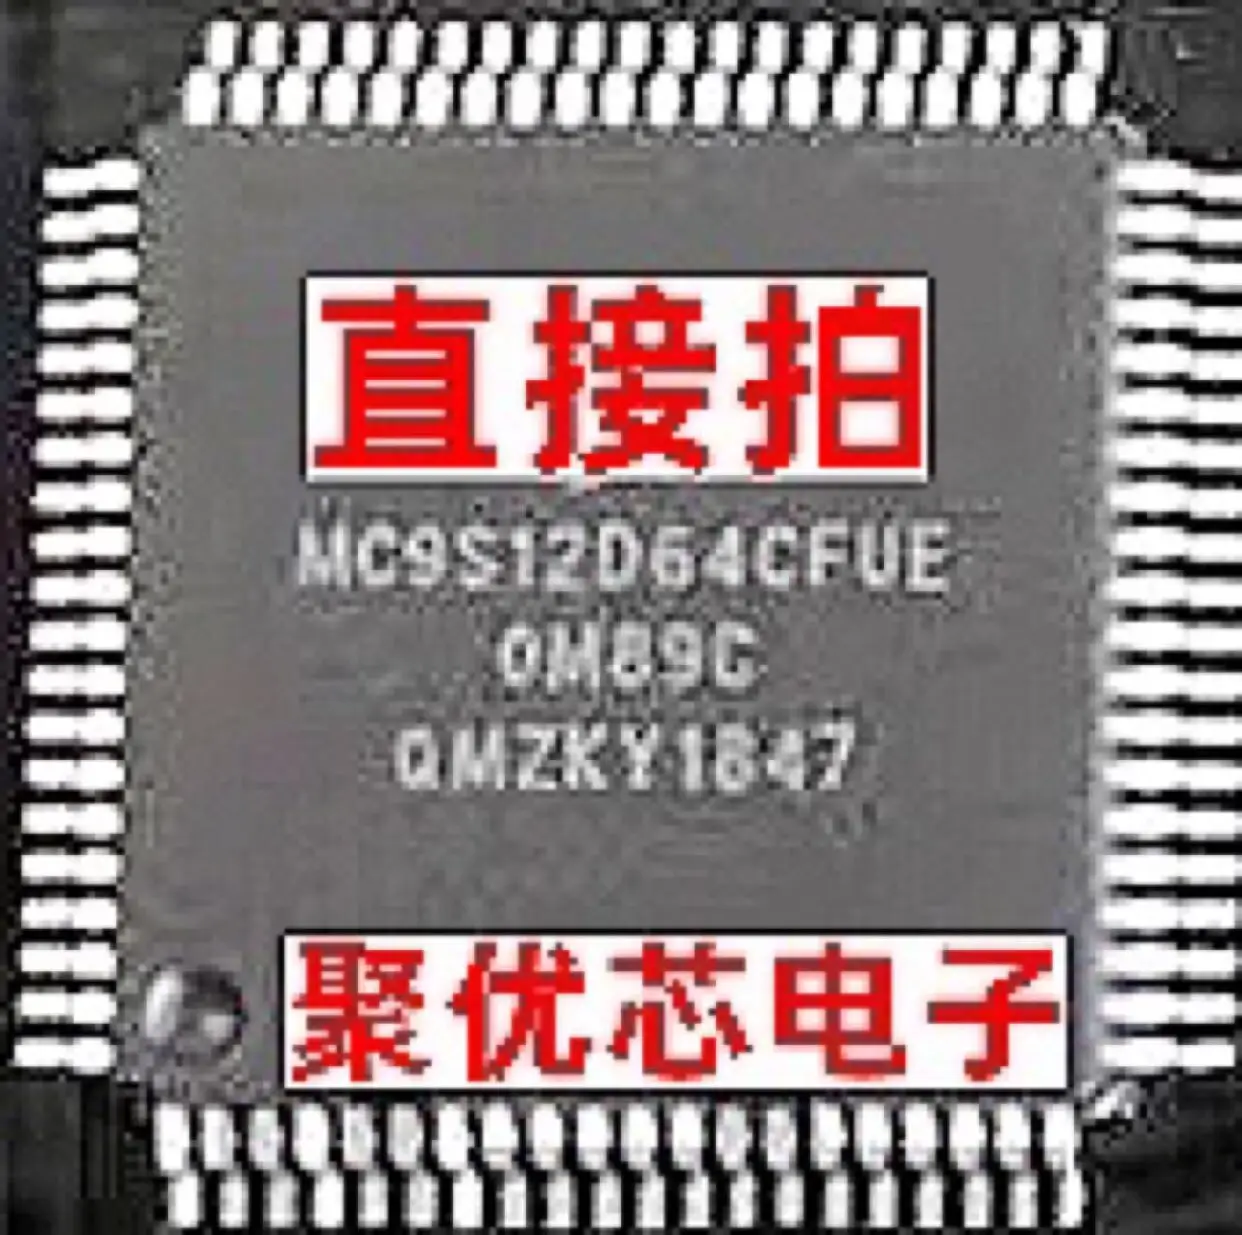 

MC9S12D64CFUE MC9S12D64MFUE MC9S12D64MFU MC9S12D64